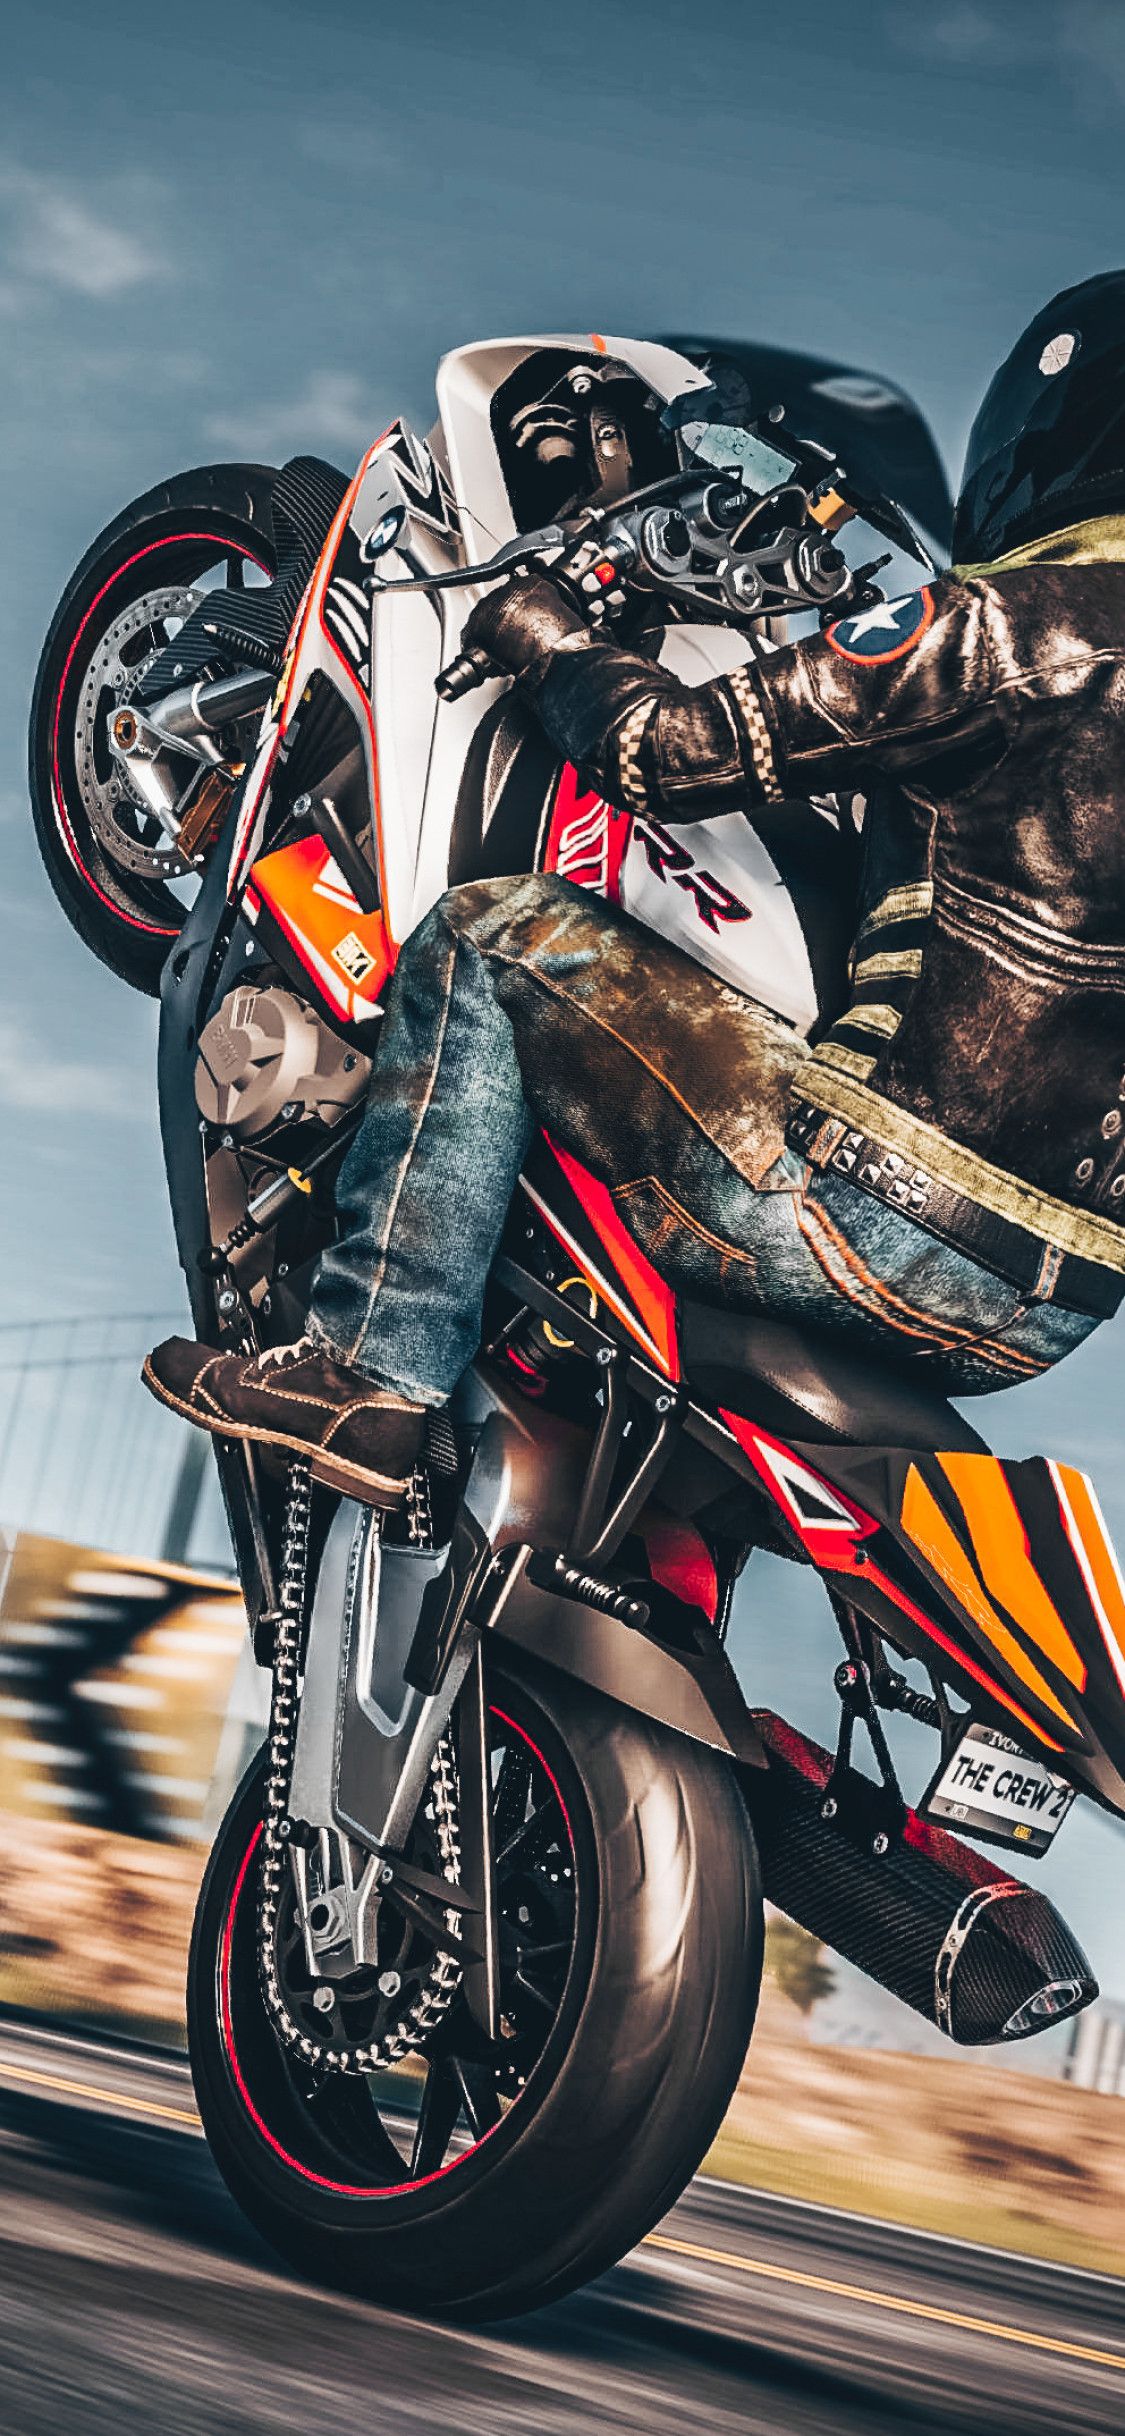 4K Motorcycle Wallpapers  Top Những Hình Ảnh Đẹp